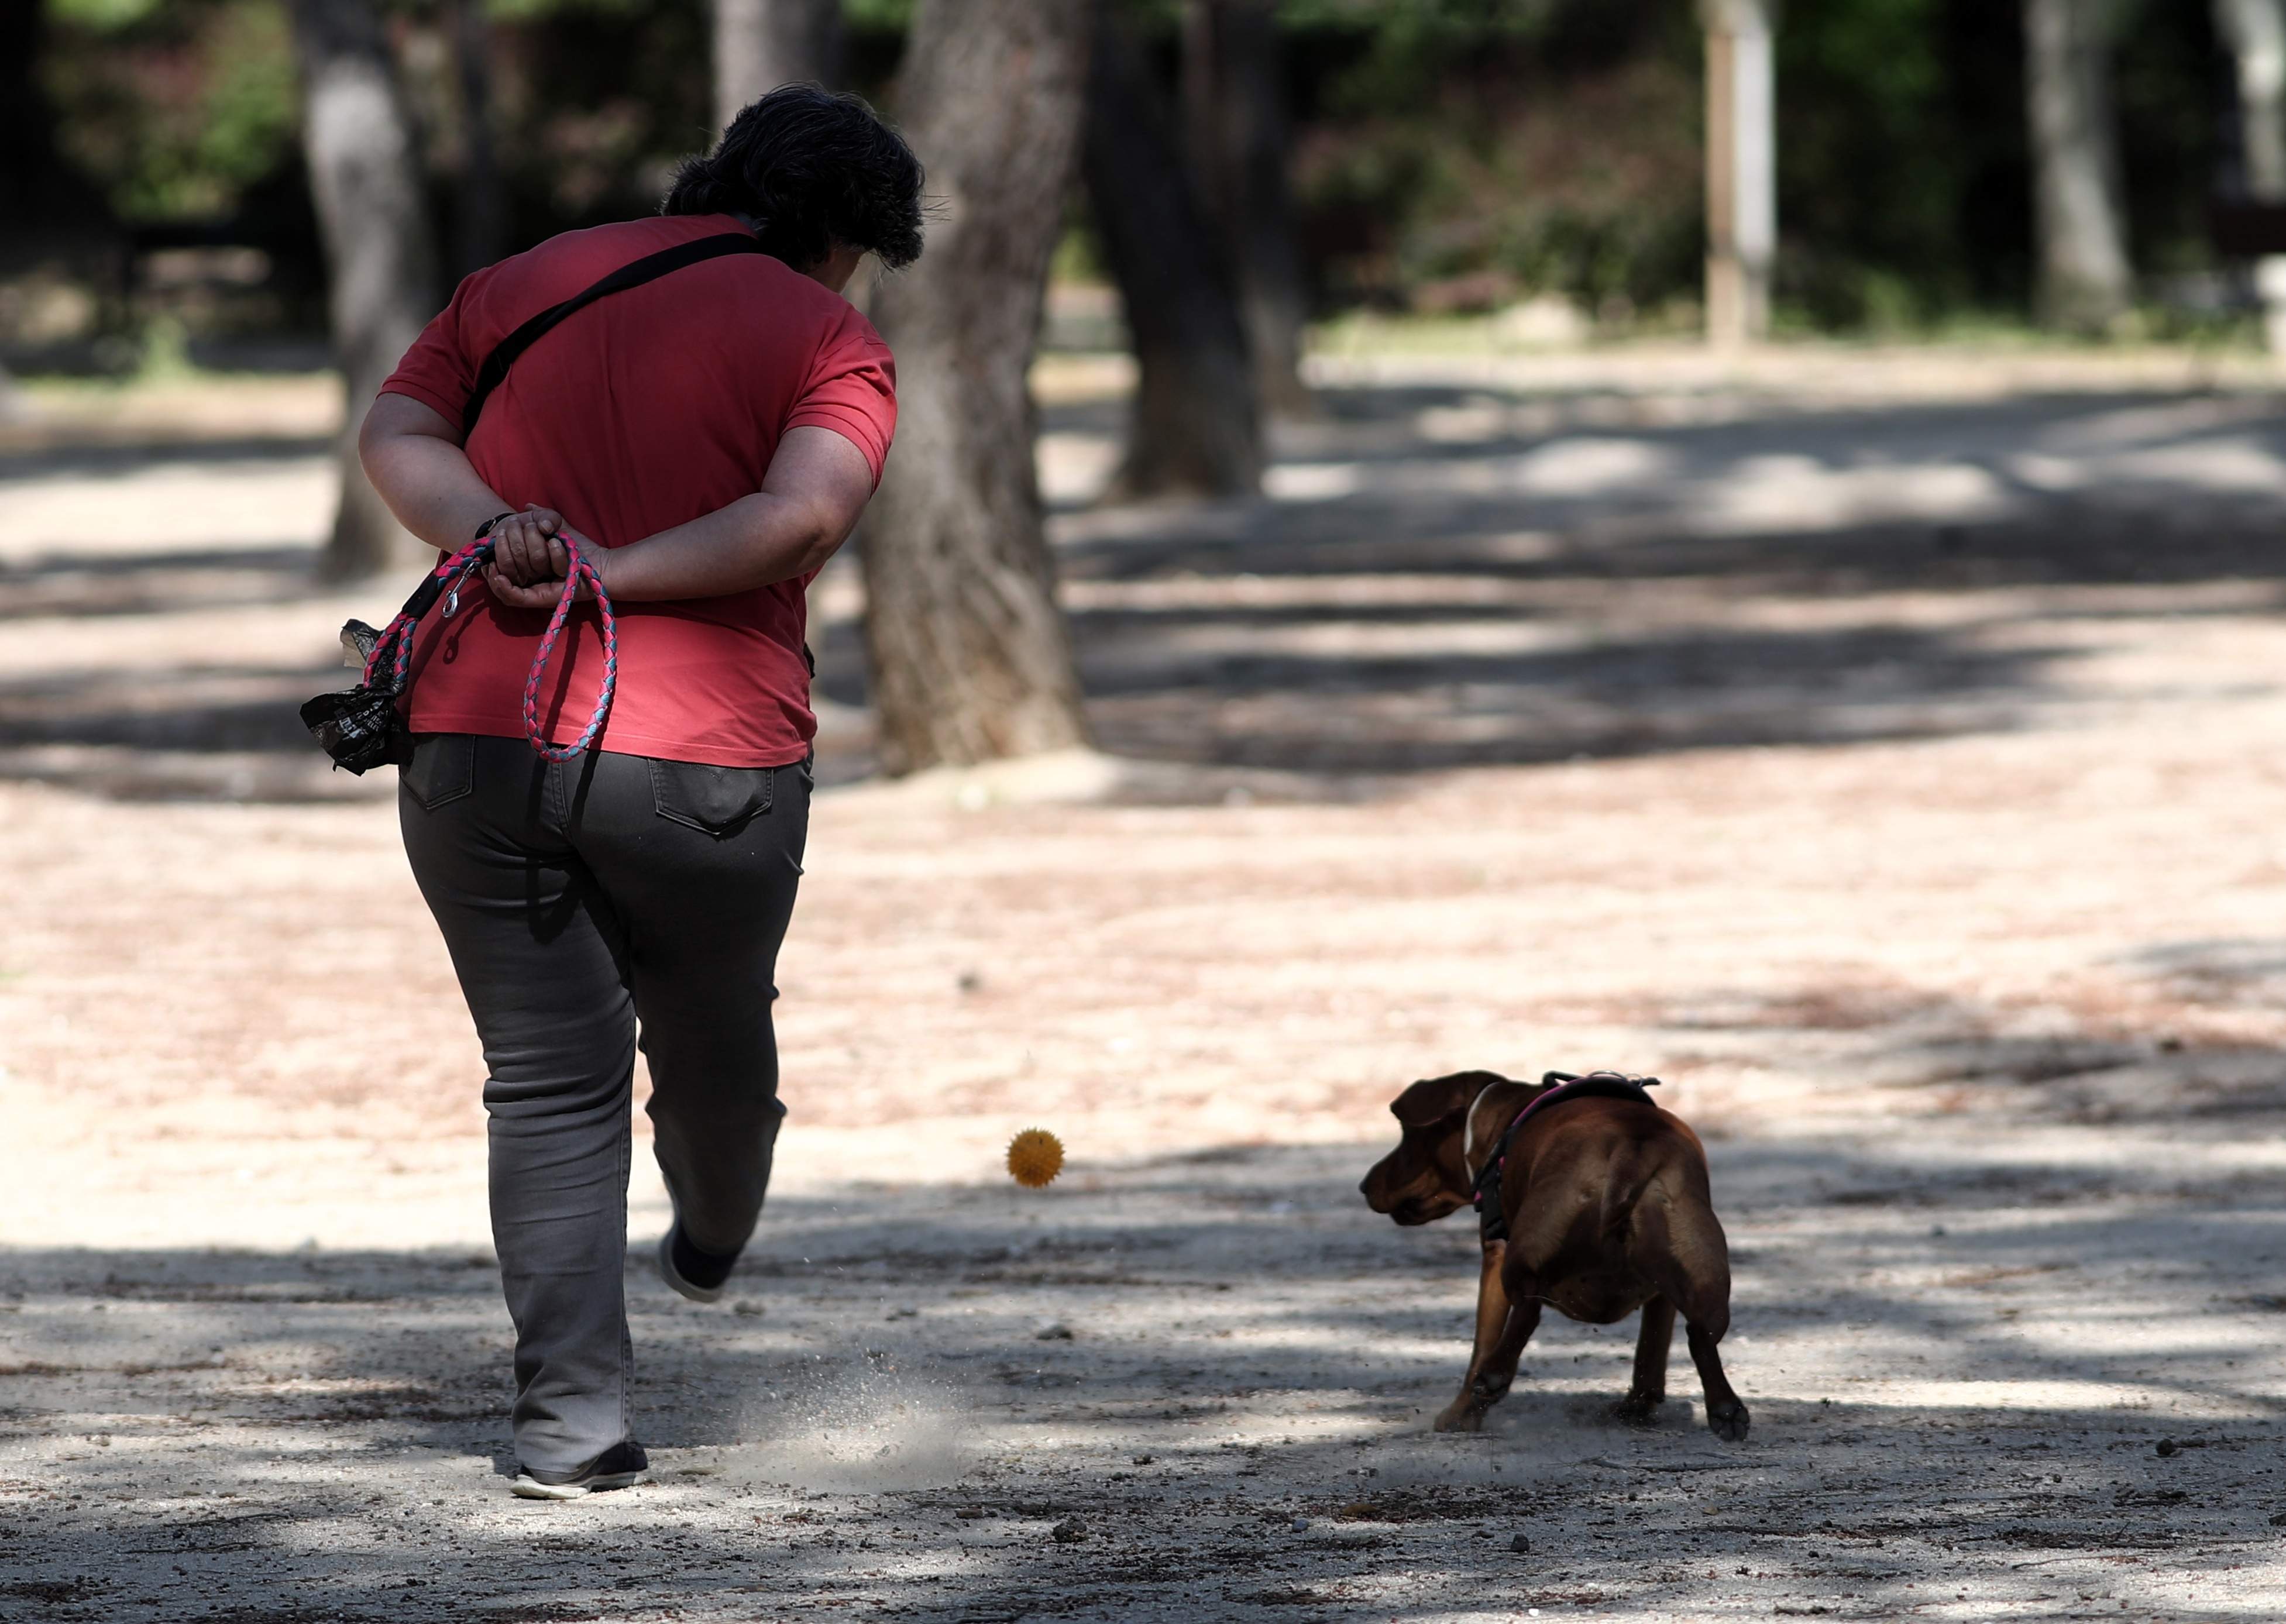 EuropaPress 3054990 mujer pasea perro parque calero distrito ciudad lineal capital ayuntamiento